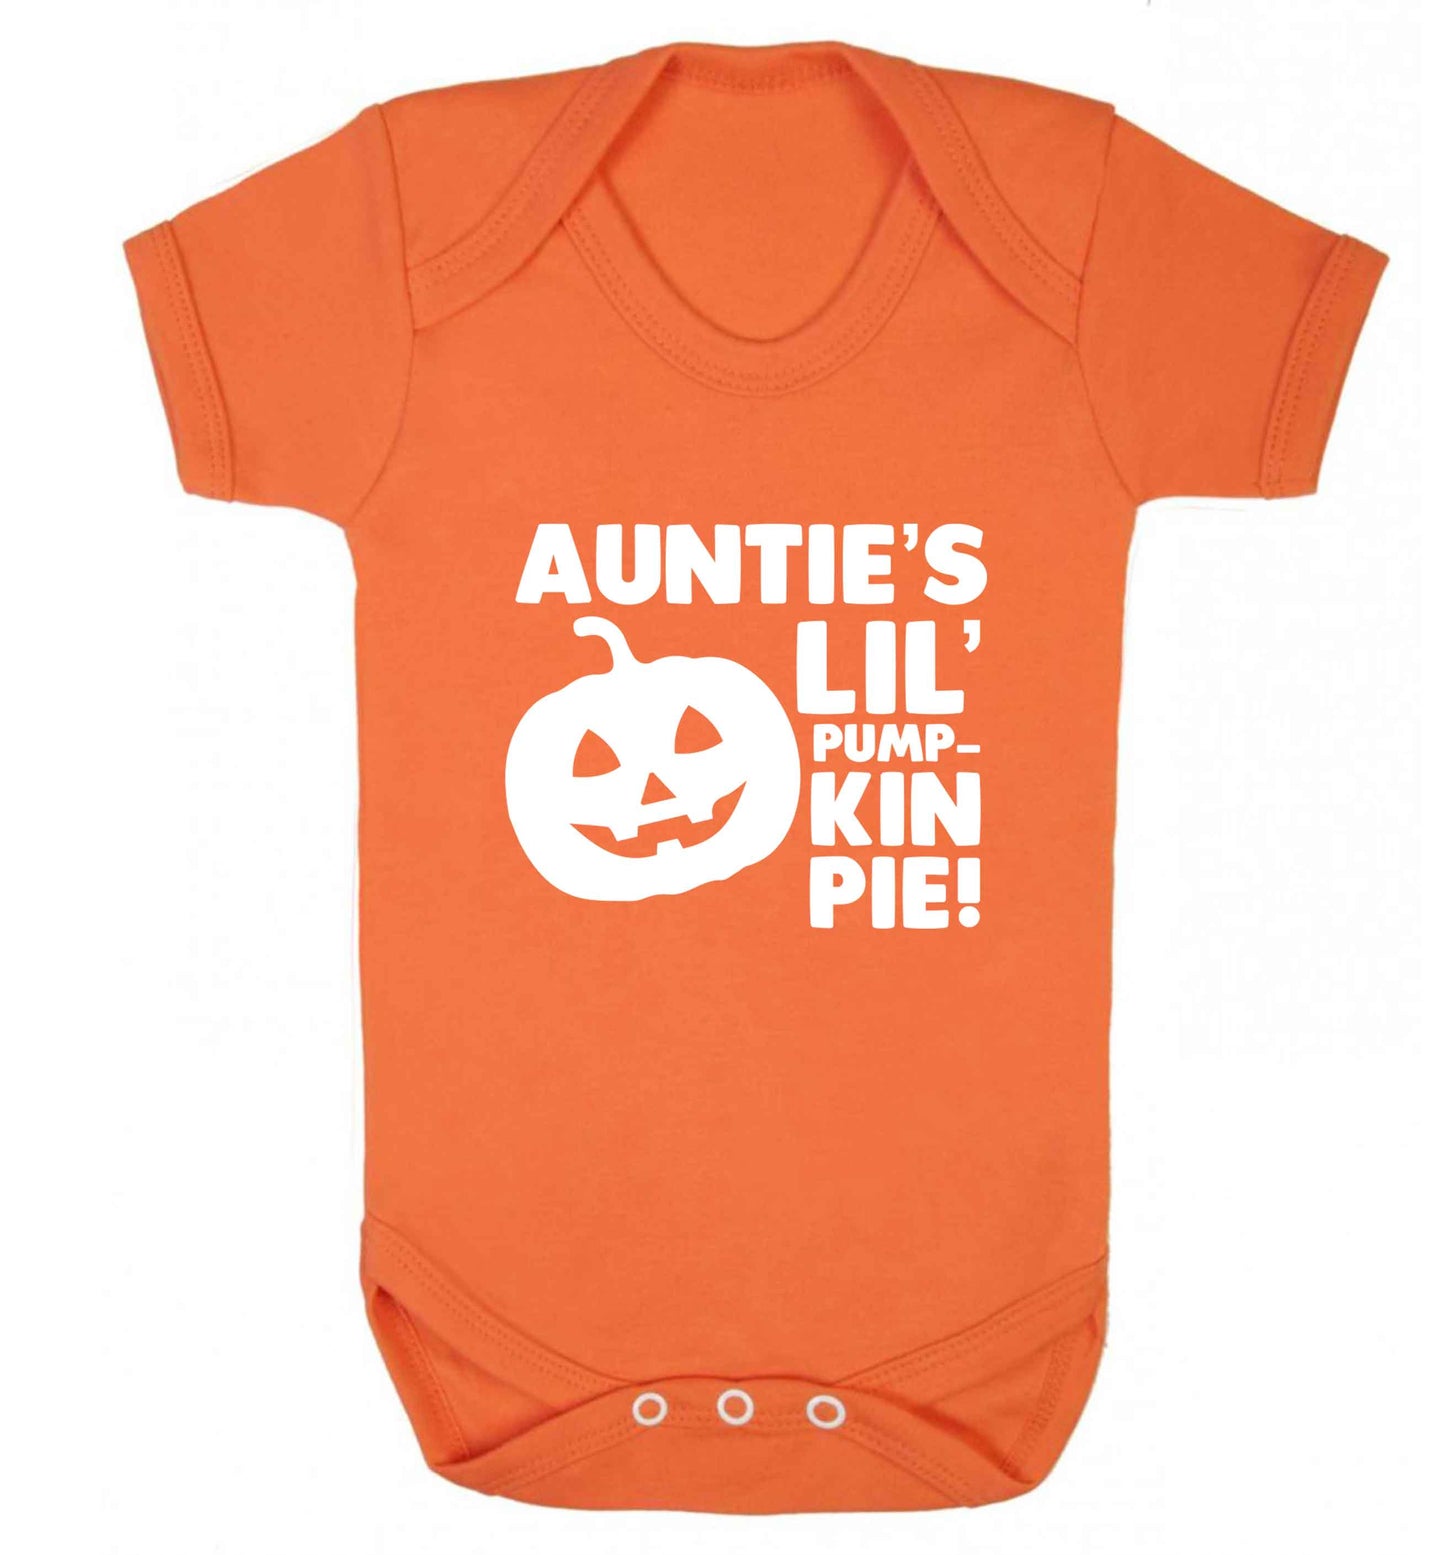 Auntie's lil' pumpkin pie baby vest orange 18-24 months